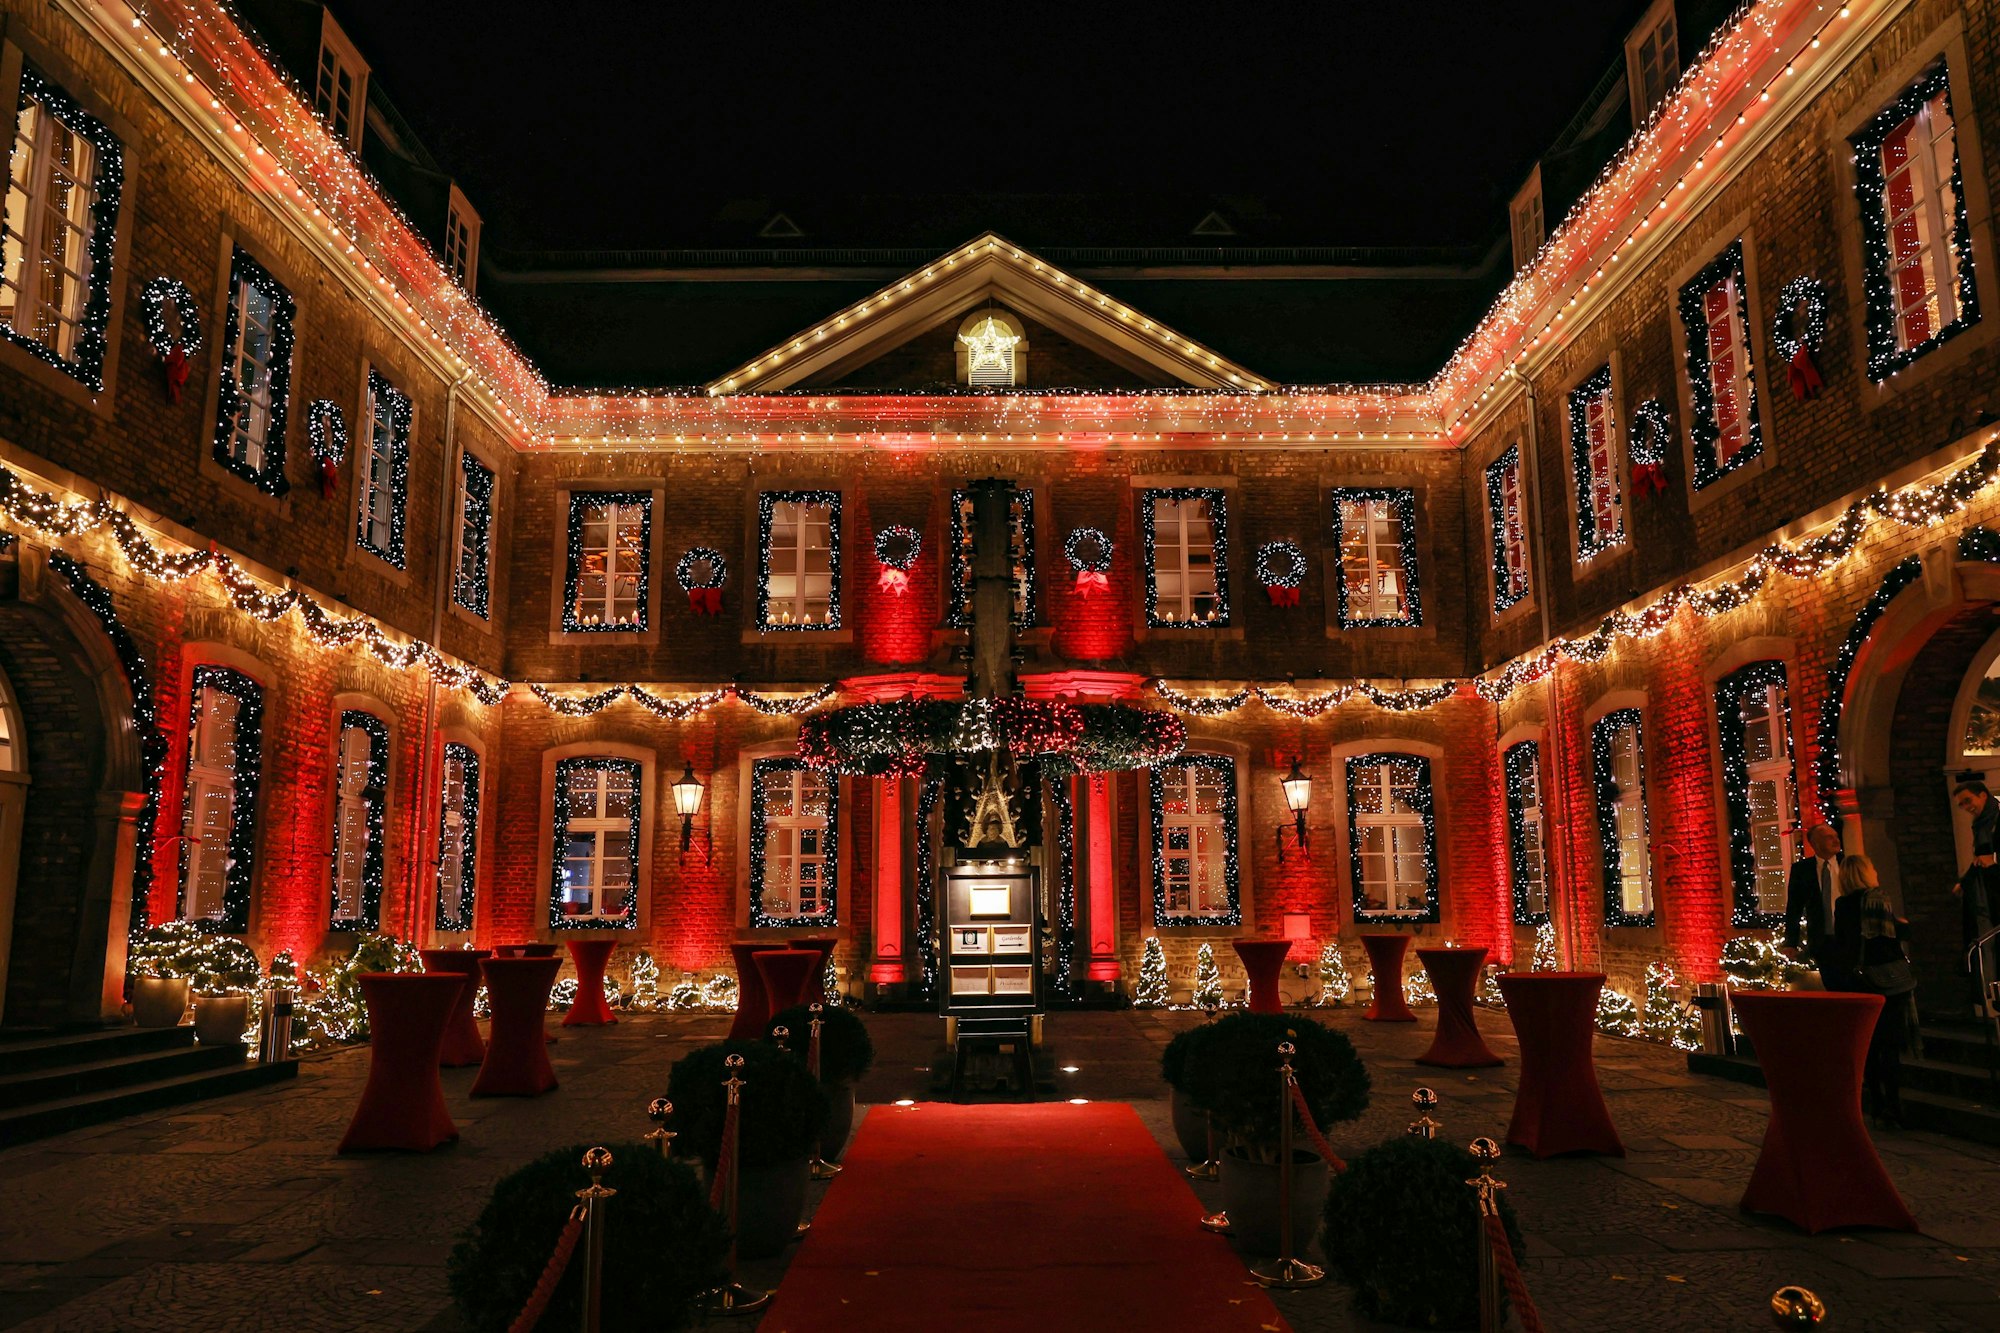 Der Innenhof der Wolkenburg ist mit zahlreichen Lichterketten sowie roten Scheinwerfern beleuchtet. An allen Fenstern hängen Girlanden.